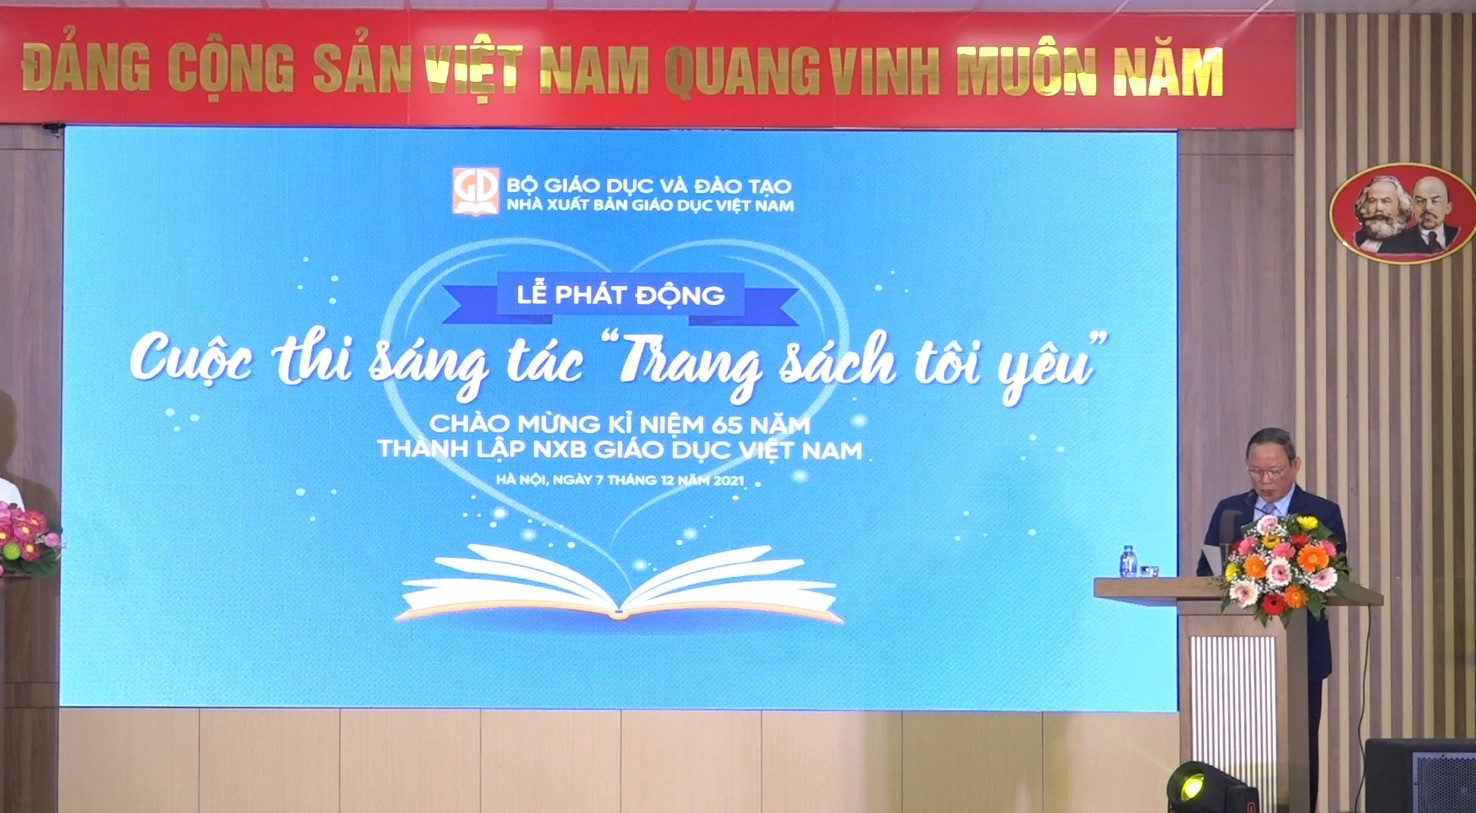 NXB Giáo dục VIệt Nam phát động cuộc thi sáng tác "Trang sách tôi yêu"